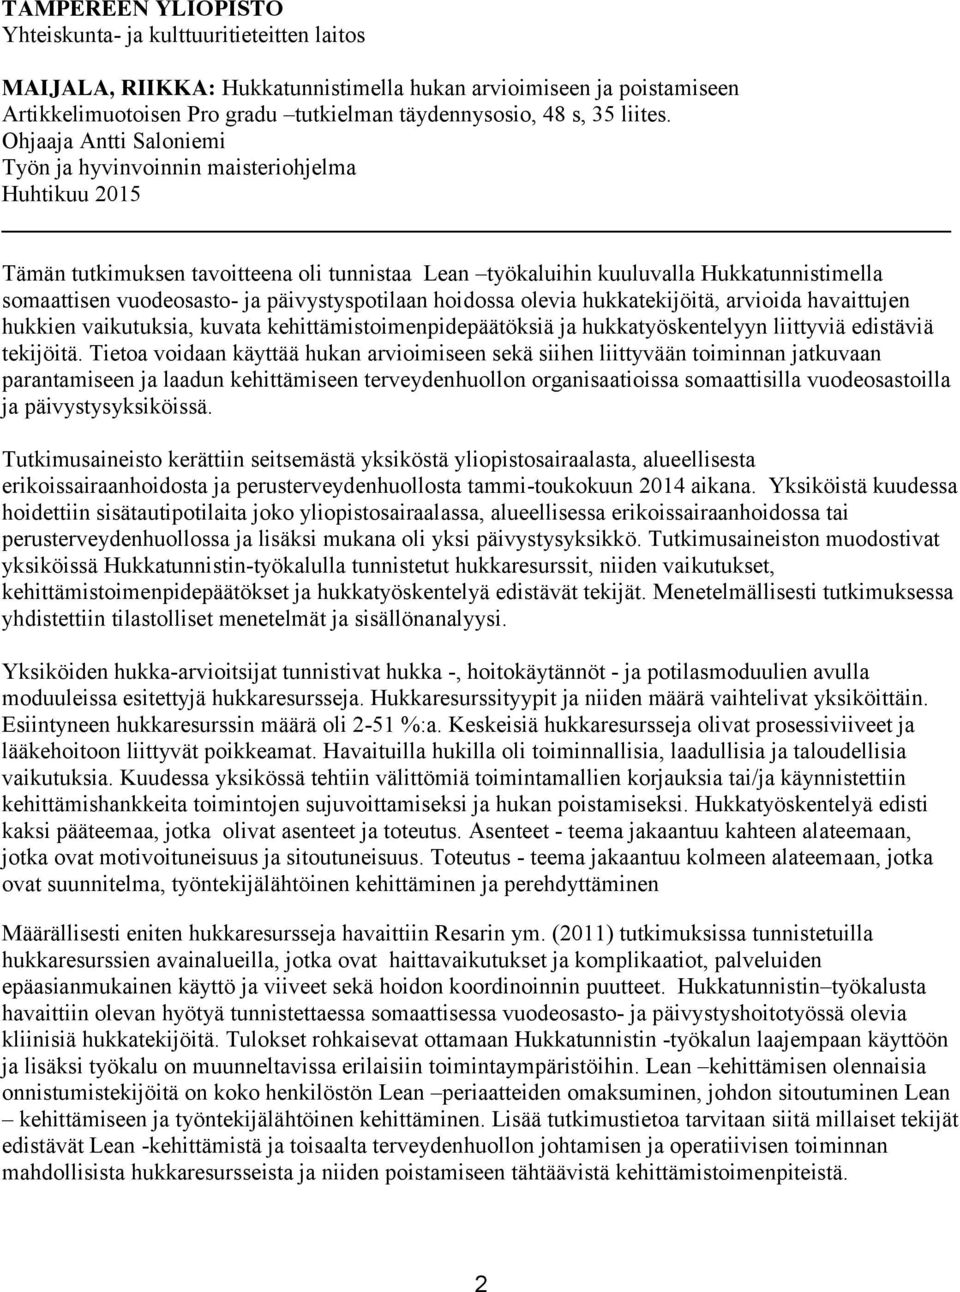 Ohjaaja Antti Saloniemi Työn ja hyvinvoinnin maisteriohjelma Huhtikuu 2015 Tämän tutkimuksen tavoitteena oli tunnistaa Lean työkaluihin kuuluvalla Hukkatunnistimella somaattisen vuodeosasto- ja